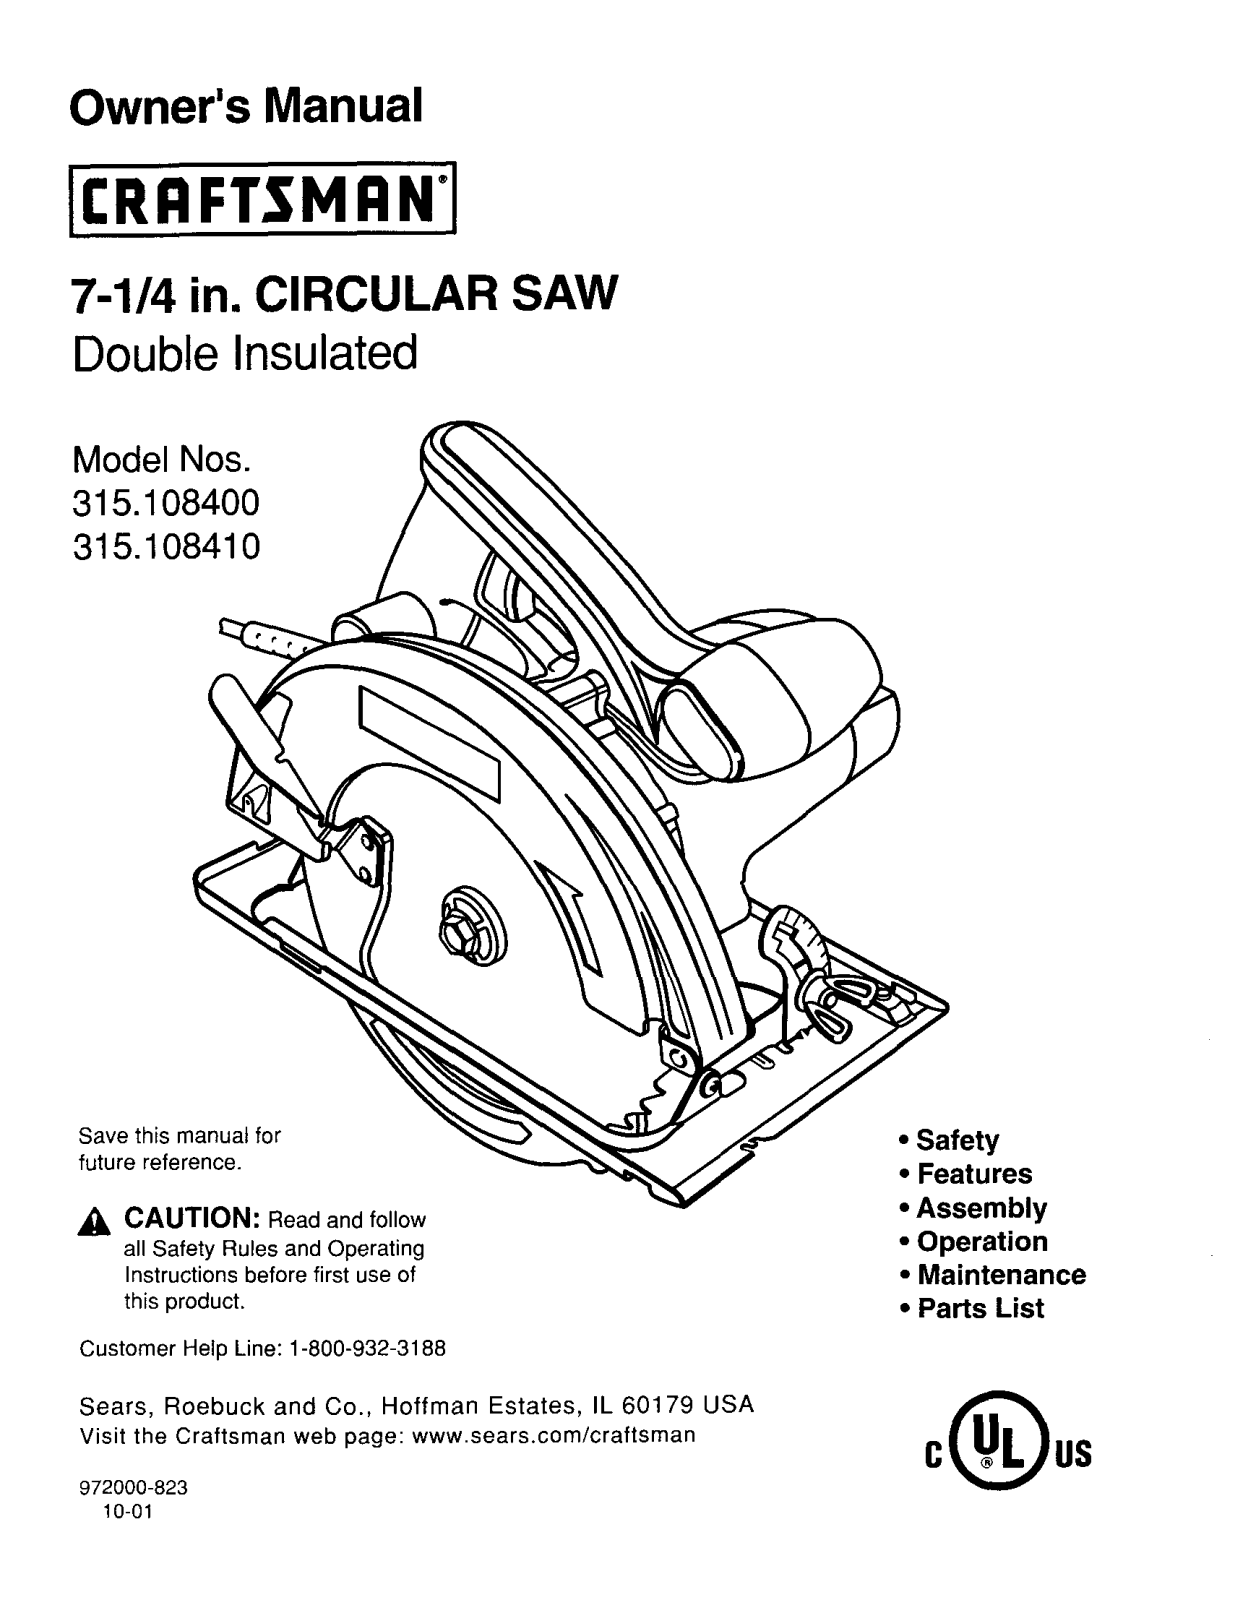 Craftsman 315.108410 User Manual